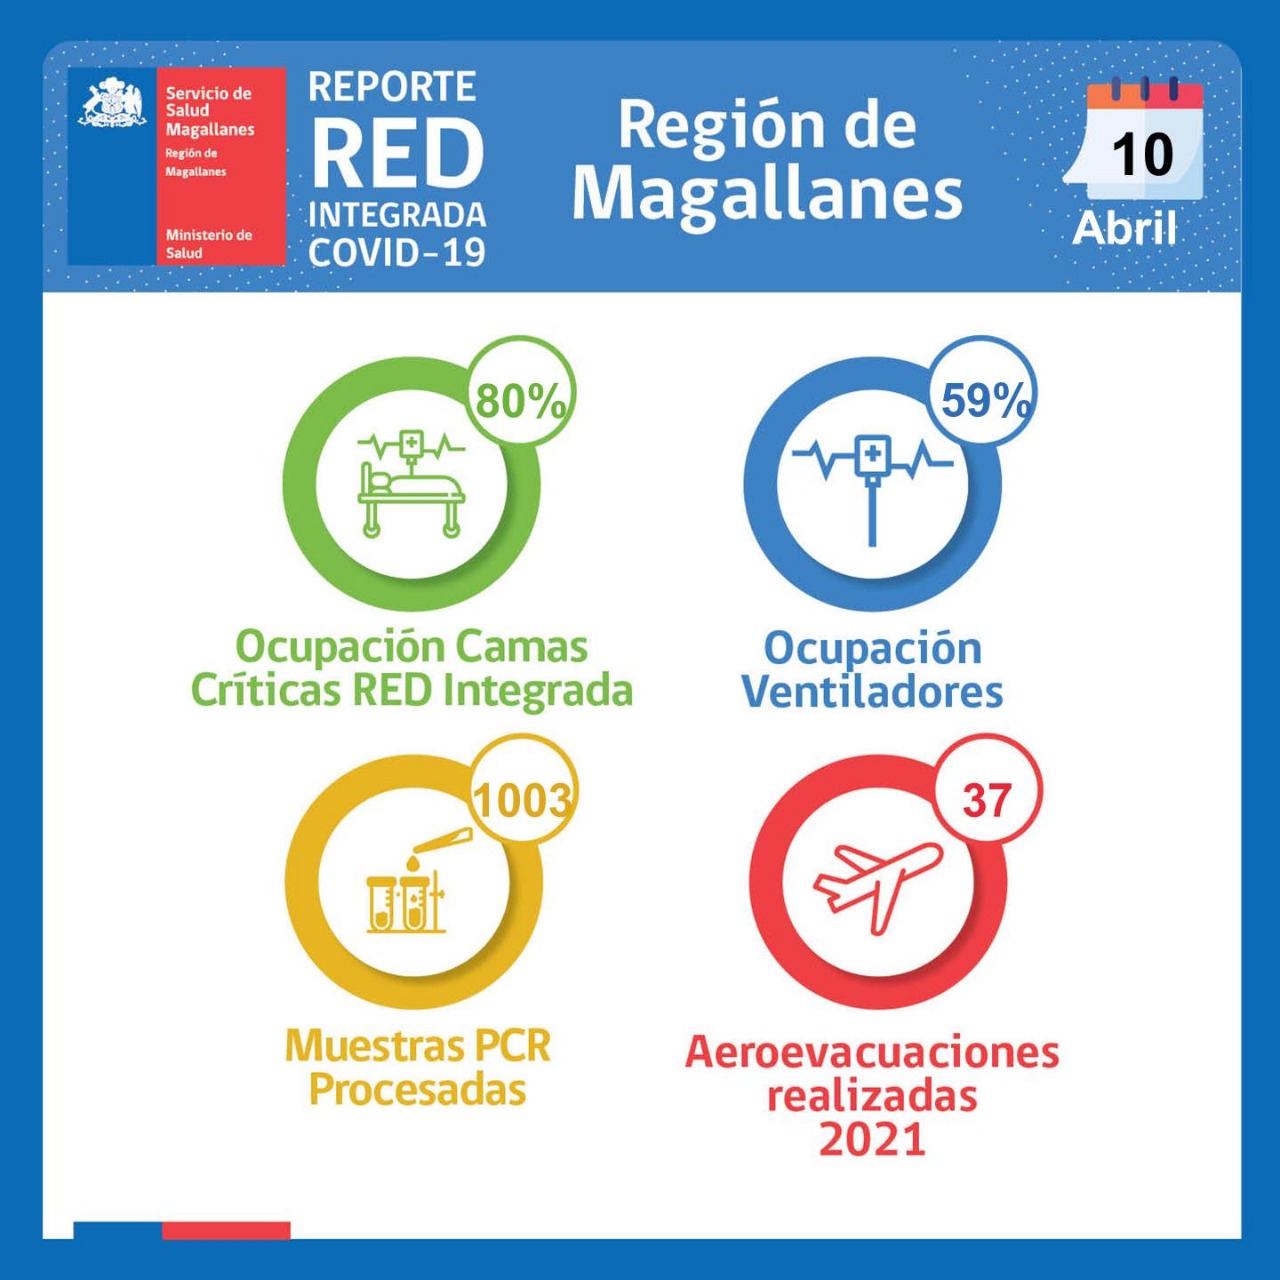 Estado de la Red Integrada Covid19 en Magallanes, al 10 de abril de 2021